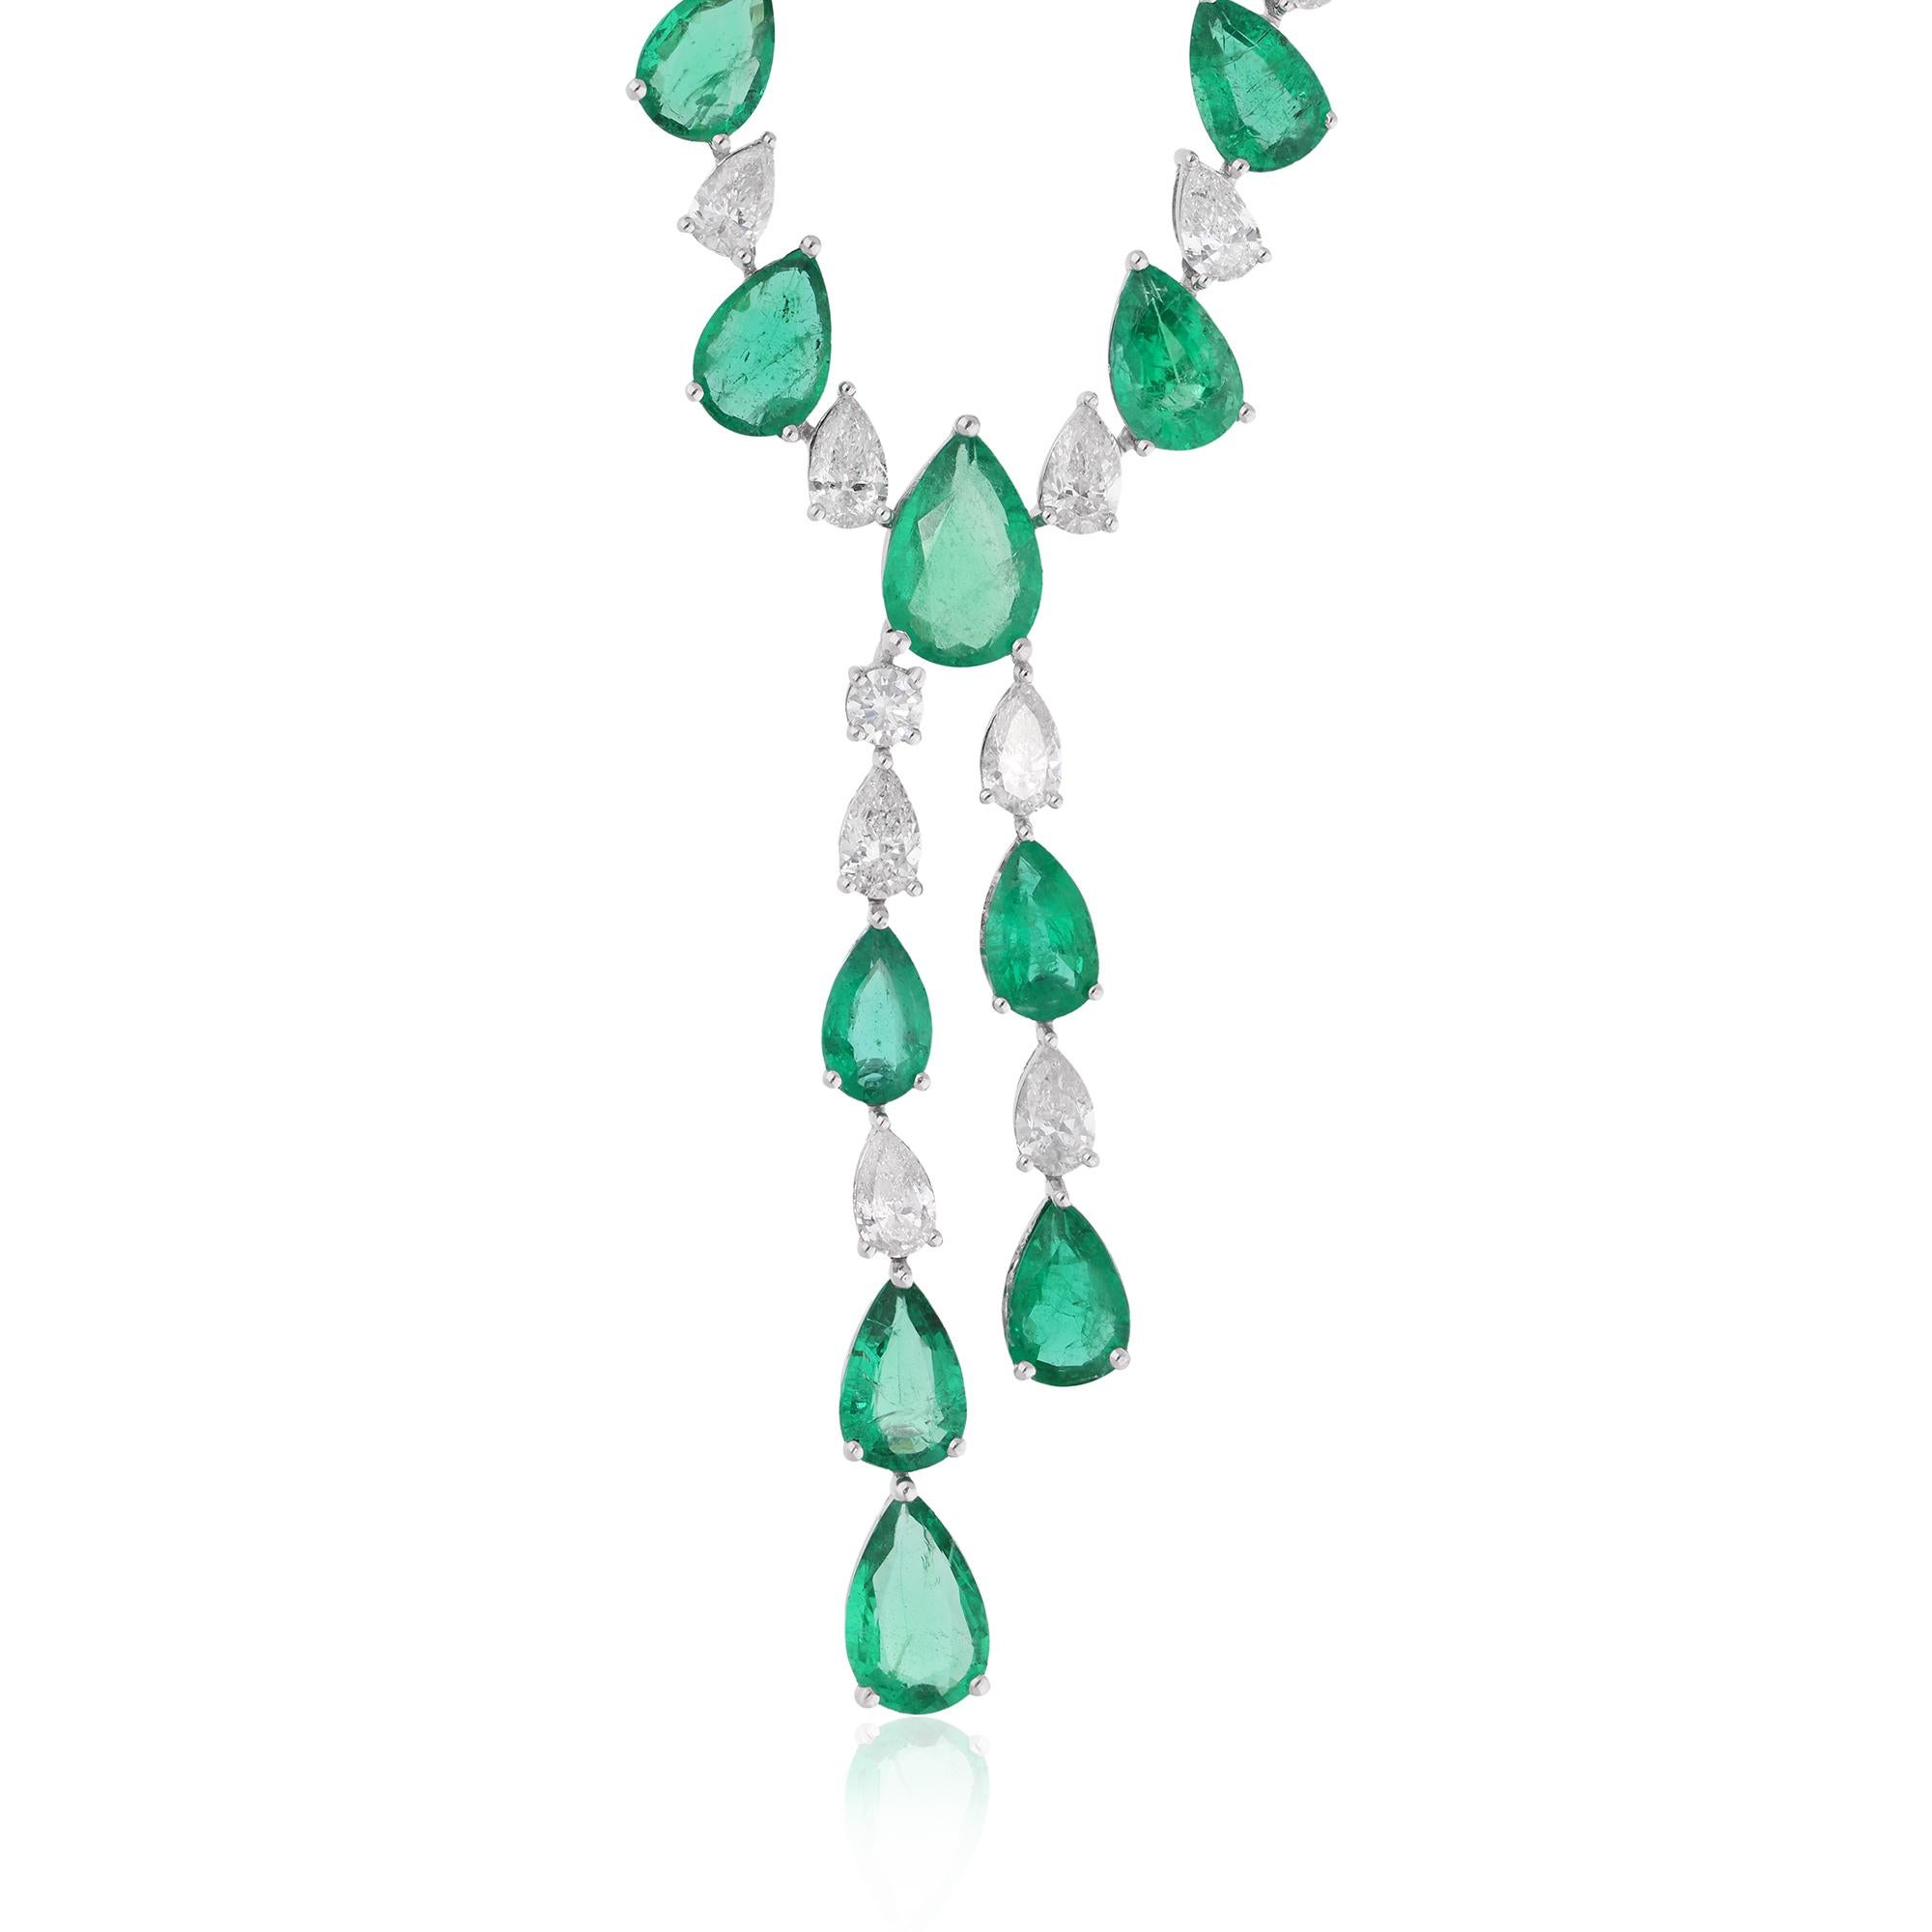 Das Herzstück dieses exquisiten Colliers ist ein prächtiger birnenförmiger Smaragd aus Sambia, der für seinen satten grünen Farbton und seine fesselnde Brillanz bekannt ist. In den berühmten Smaragdminen Sambias abgebaut, ist dieser Edelstein ein